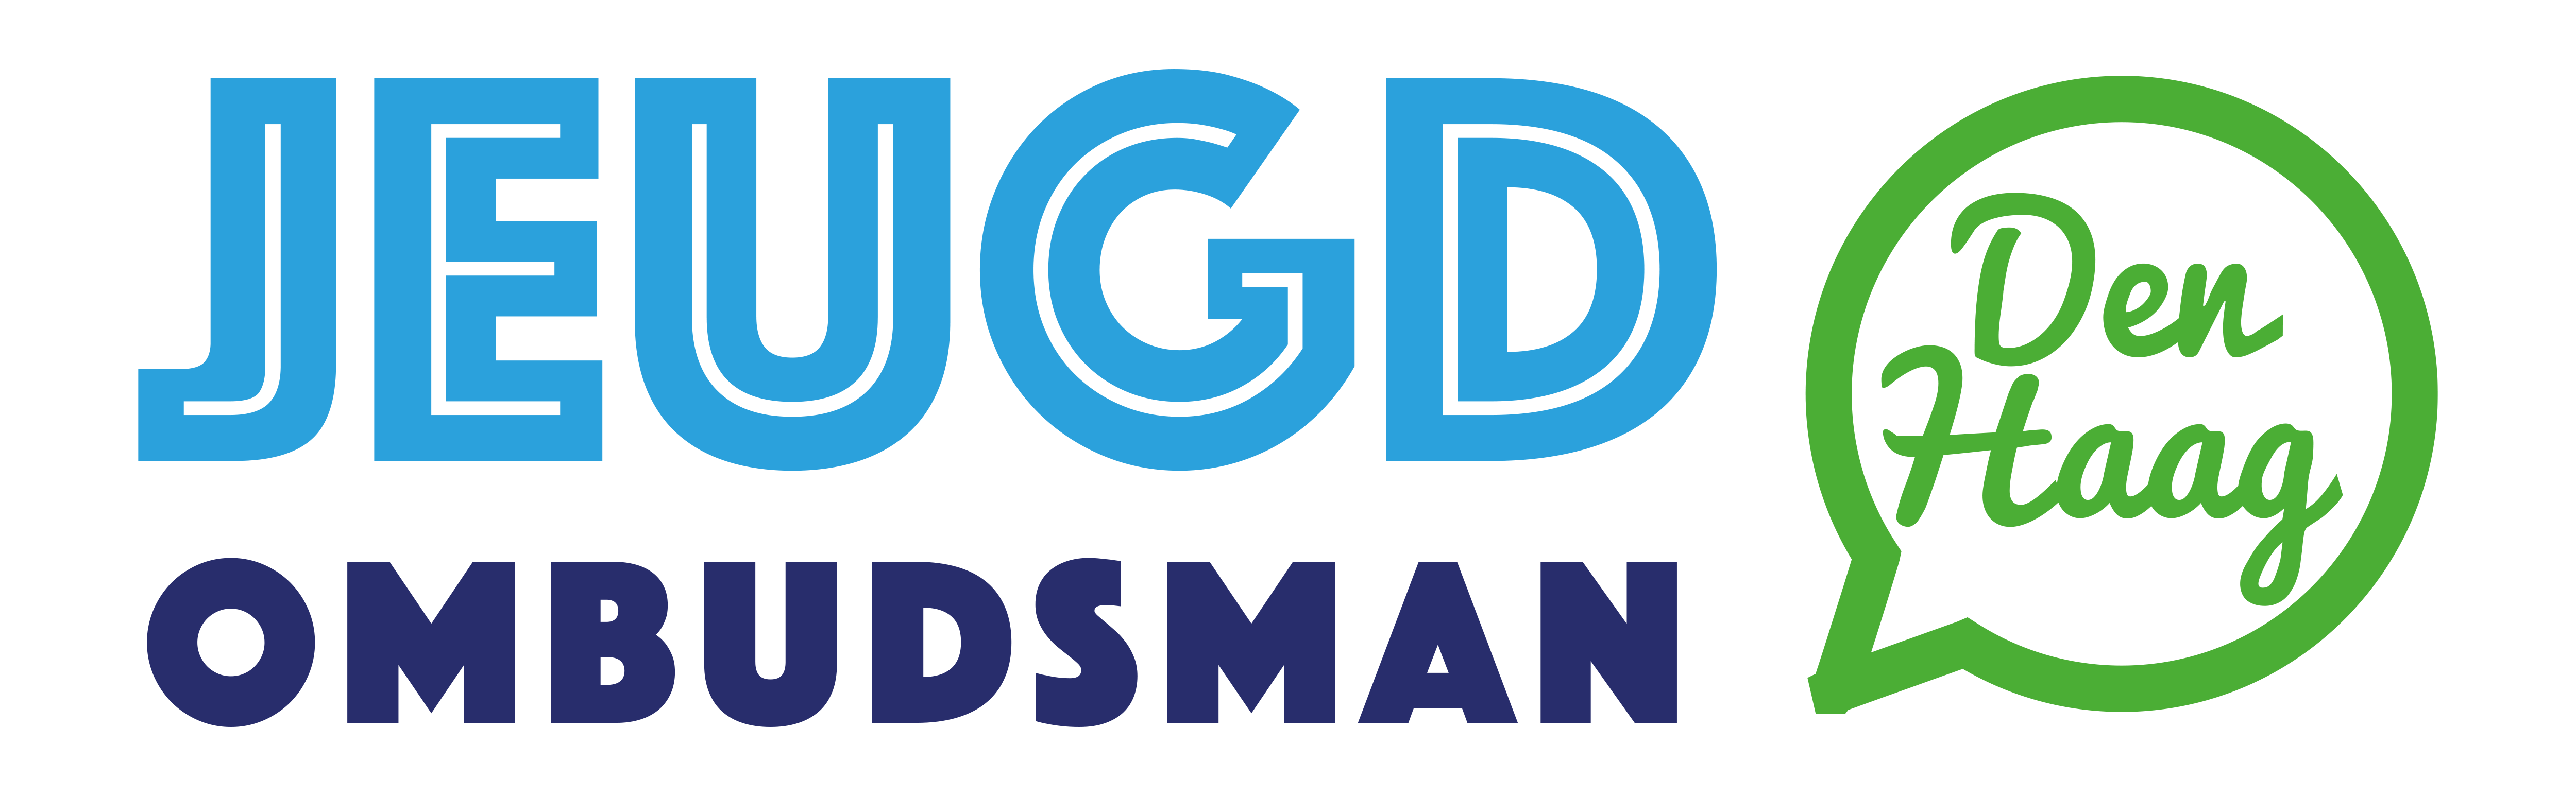 Logo Jeugdombudsman - Ga naar www.jeugdombudsman.denhaag.nl